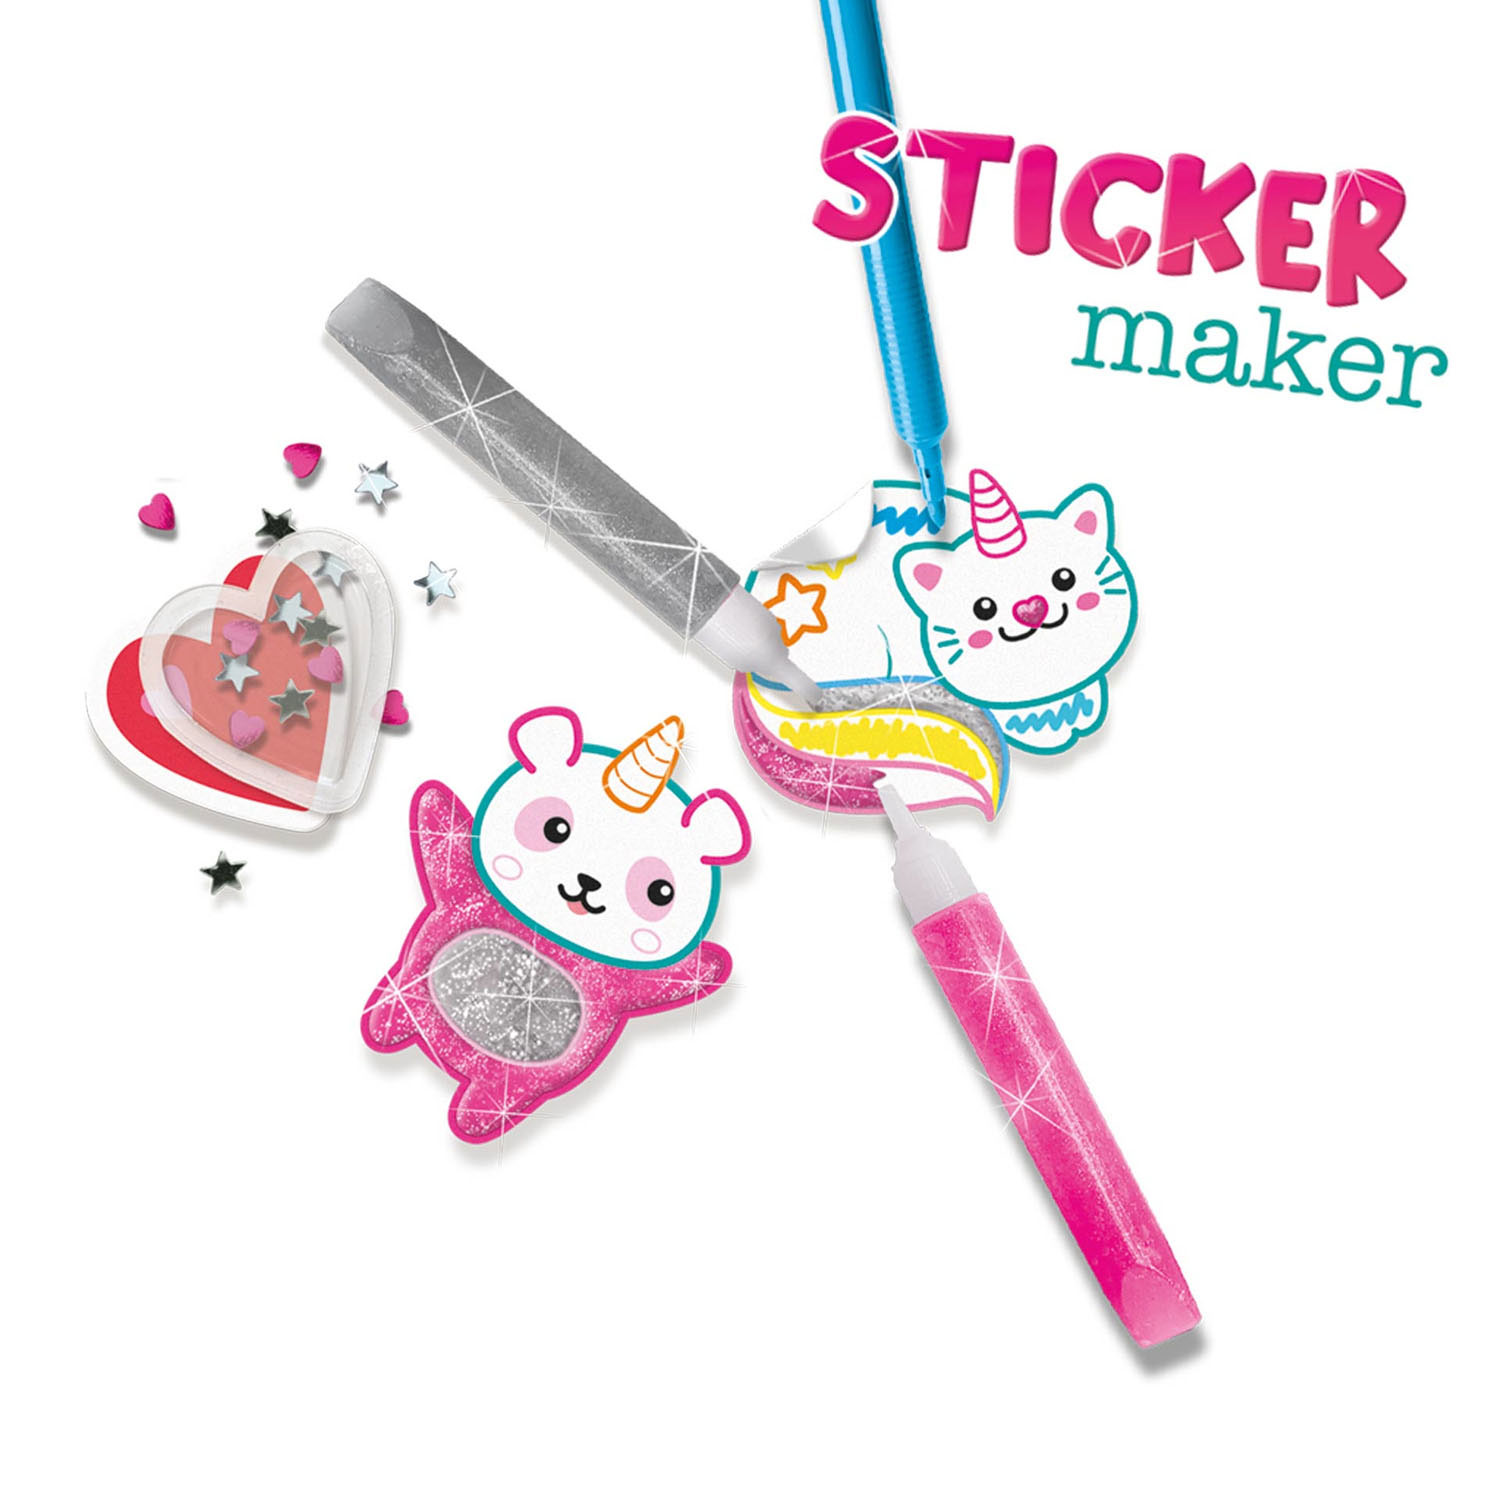 download sticker maker online free